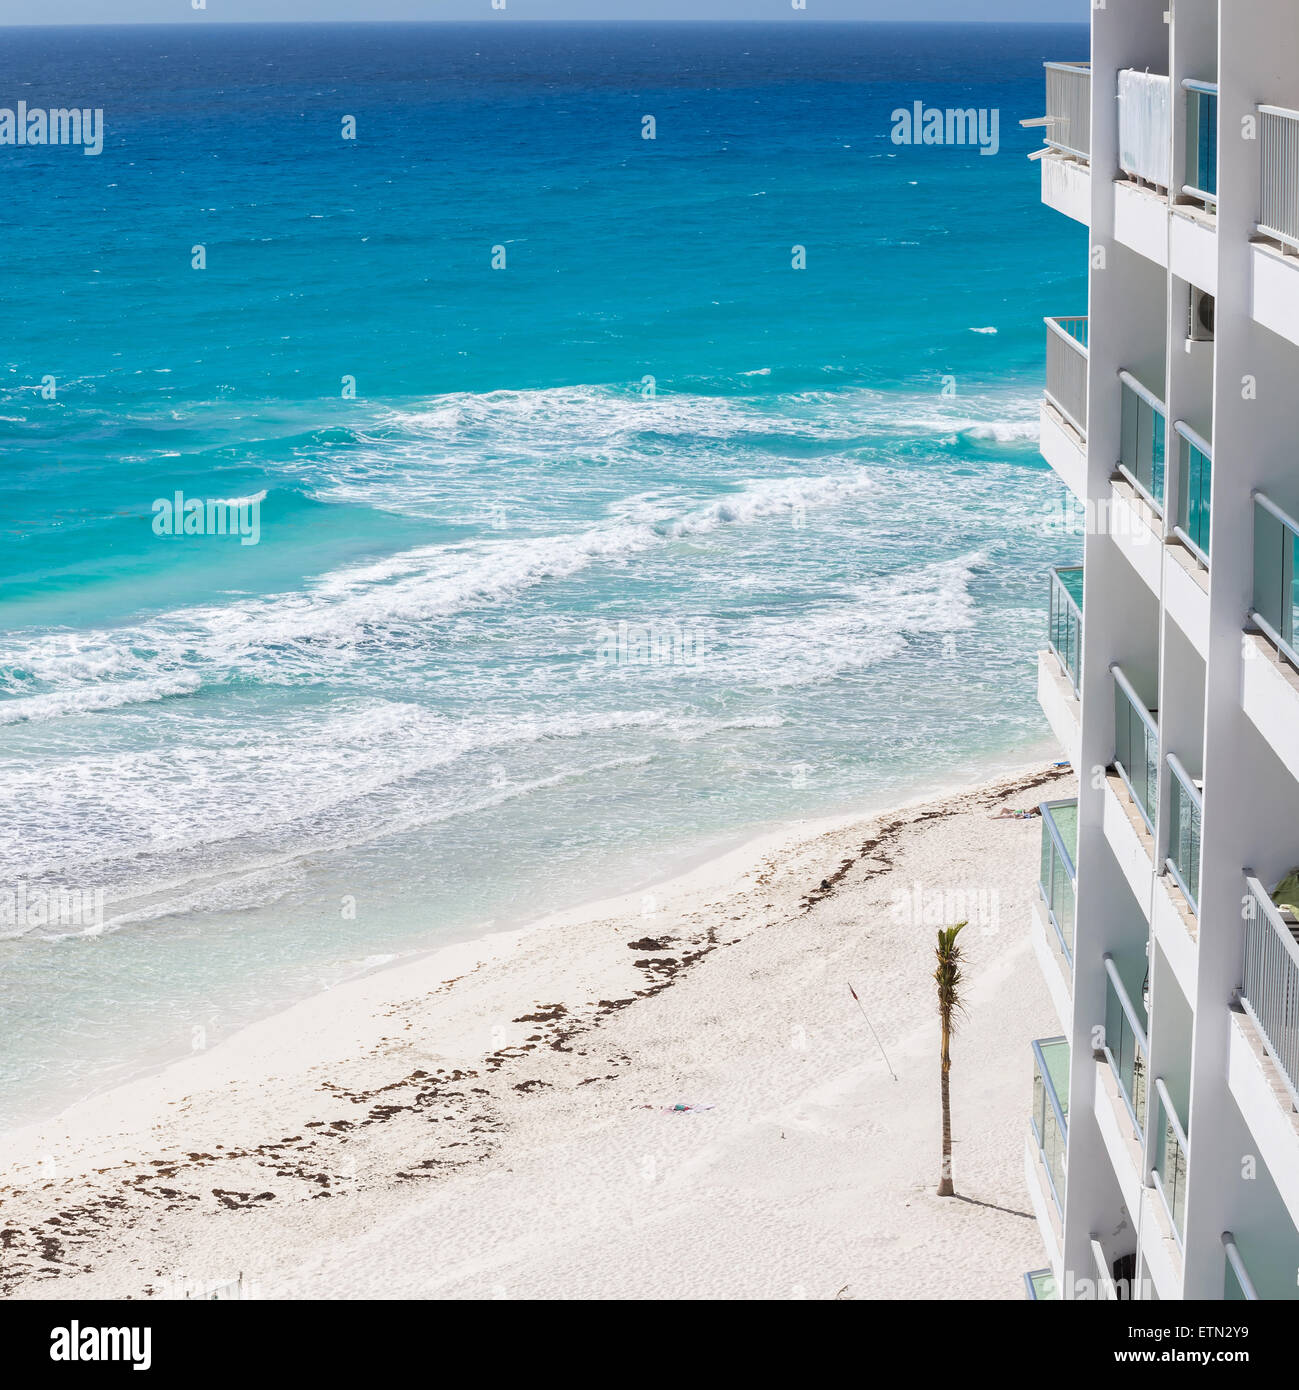 Hôtel de luxe avec balcon, vue aérienne sur la mer des Caraïbes Banque D'Images